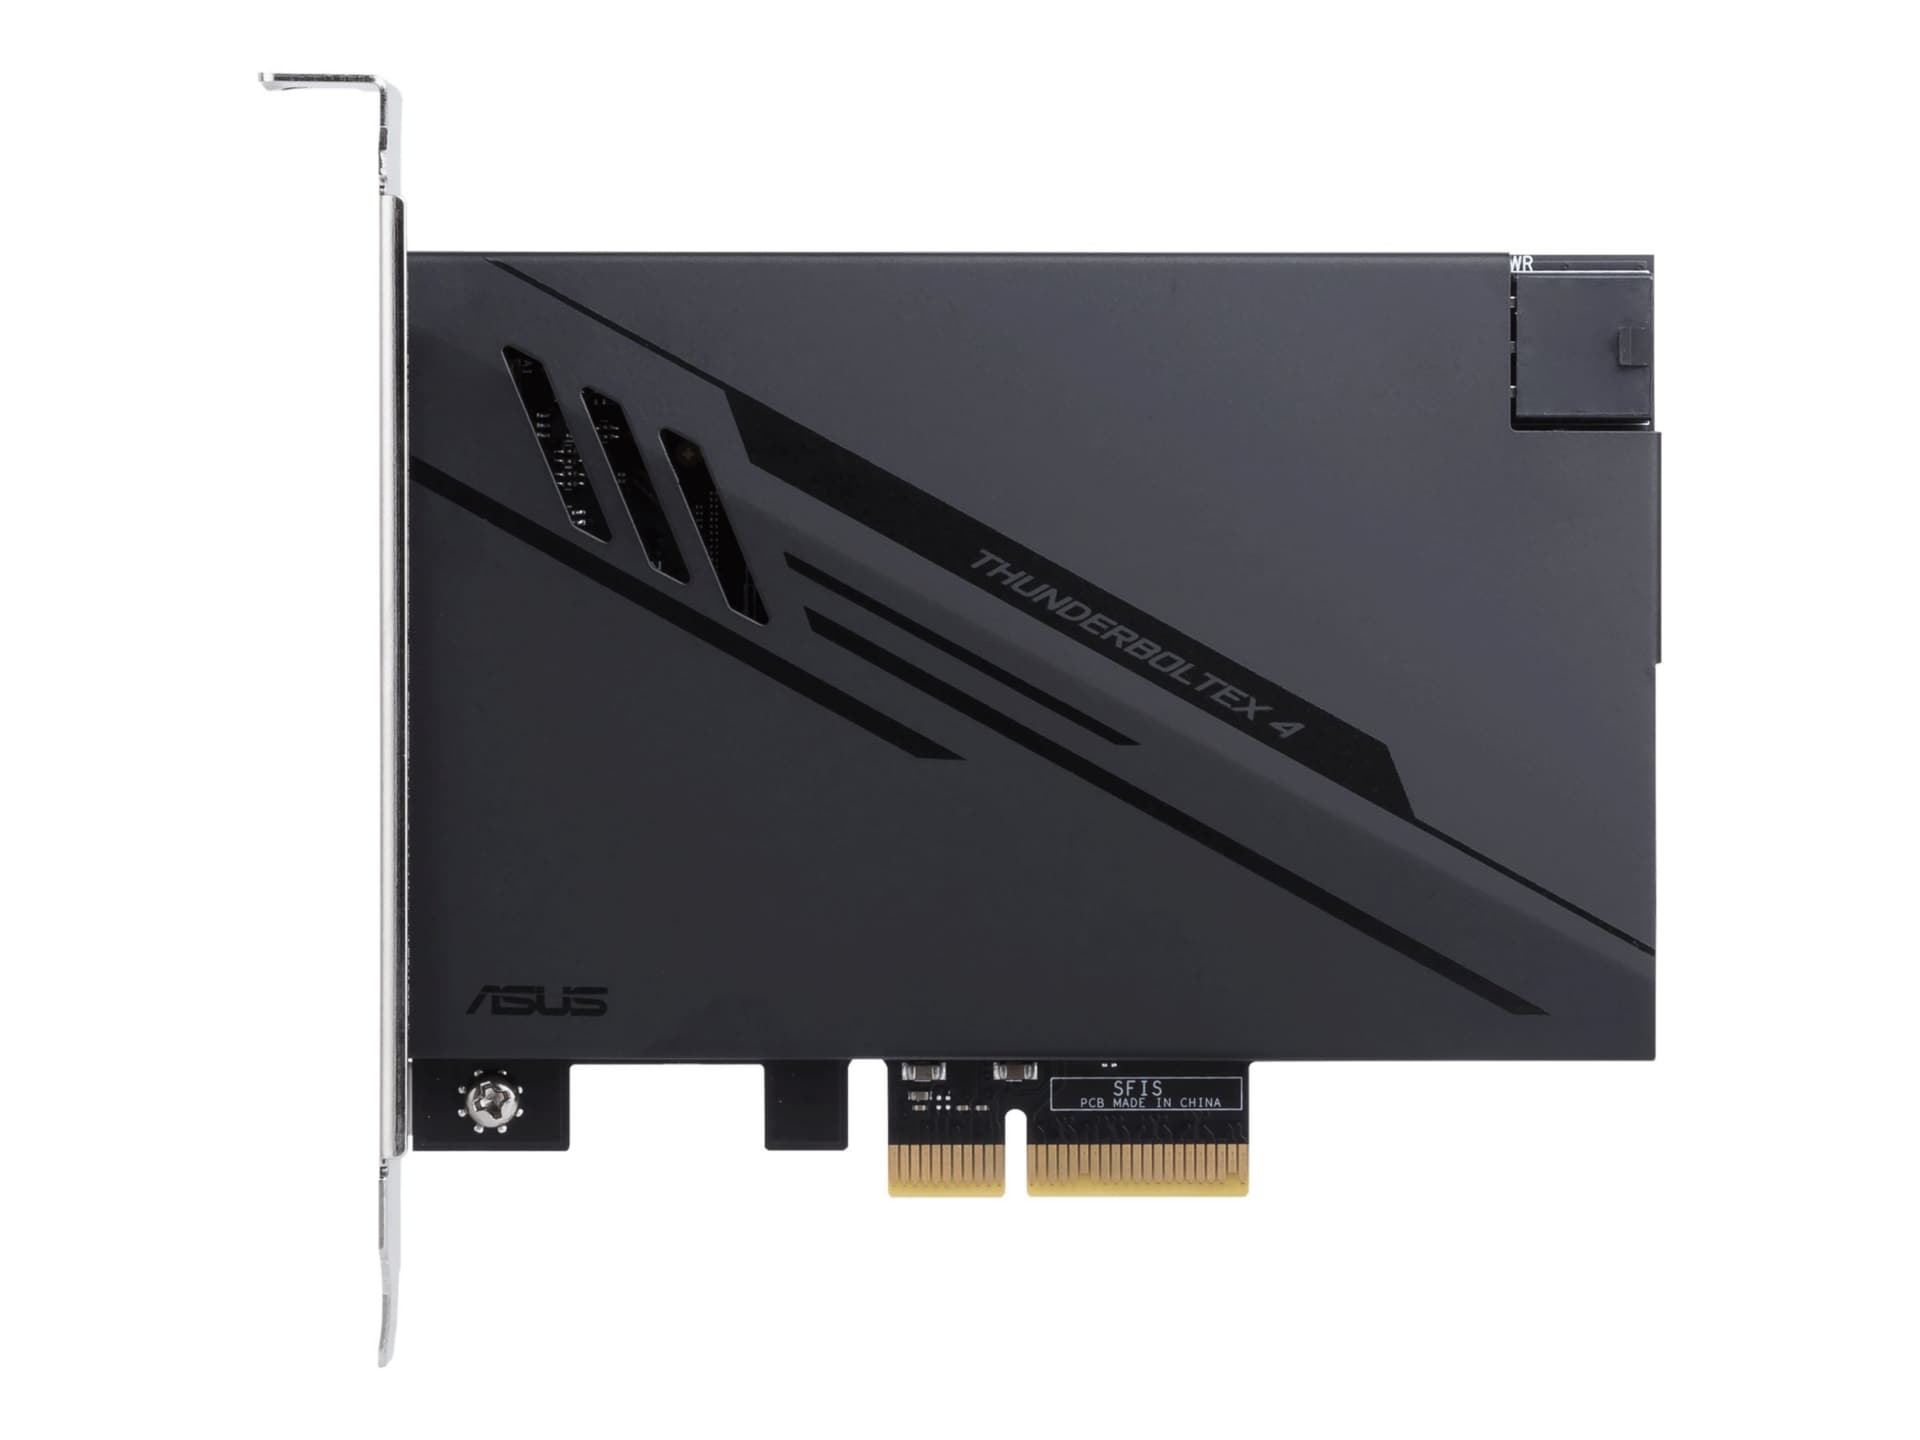 ASUS ThunderboltEX 4 - Thunderbolt adapter - PCIe 3.0 x4 - Thunderbolt 4 x 2